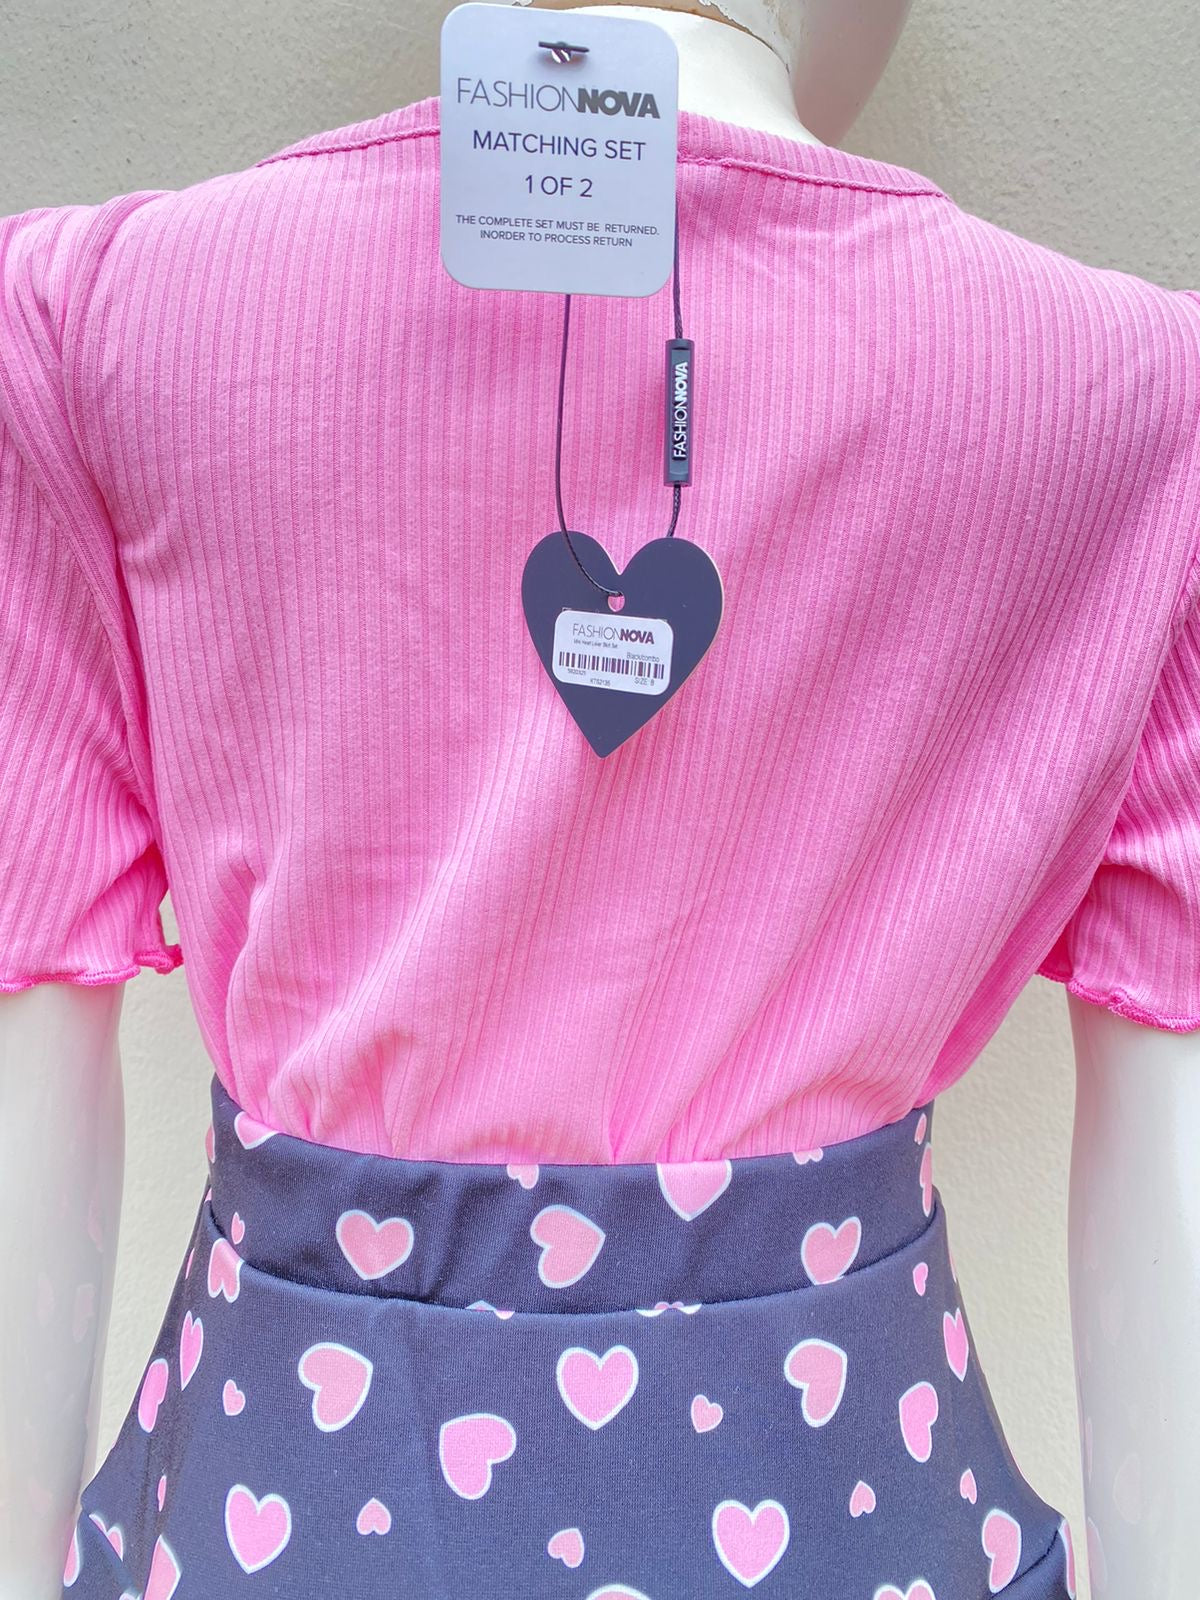 Conjunto Fashion Nova original de falda y top, rosado con negro y corazones en rosado.